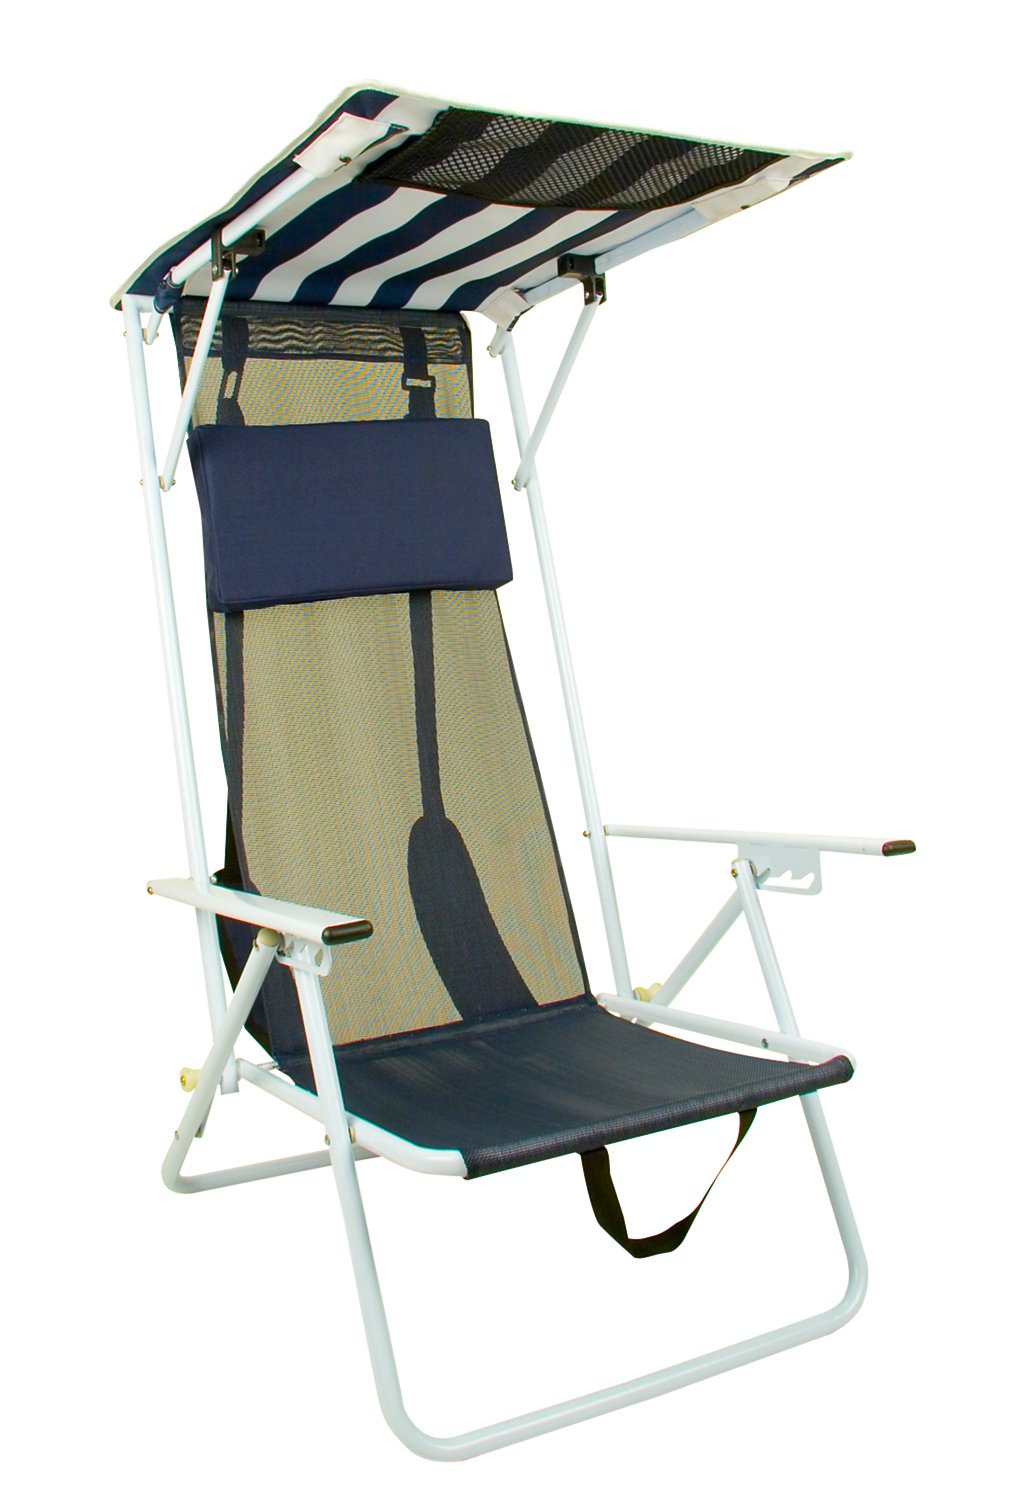 Quik Shade Adjustable Shade Canopy Folding Beach Chair Academy